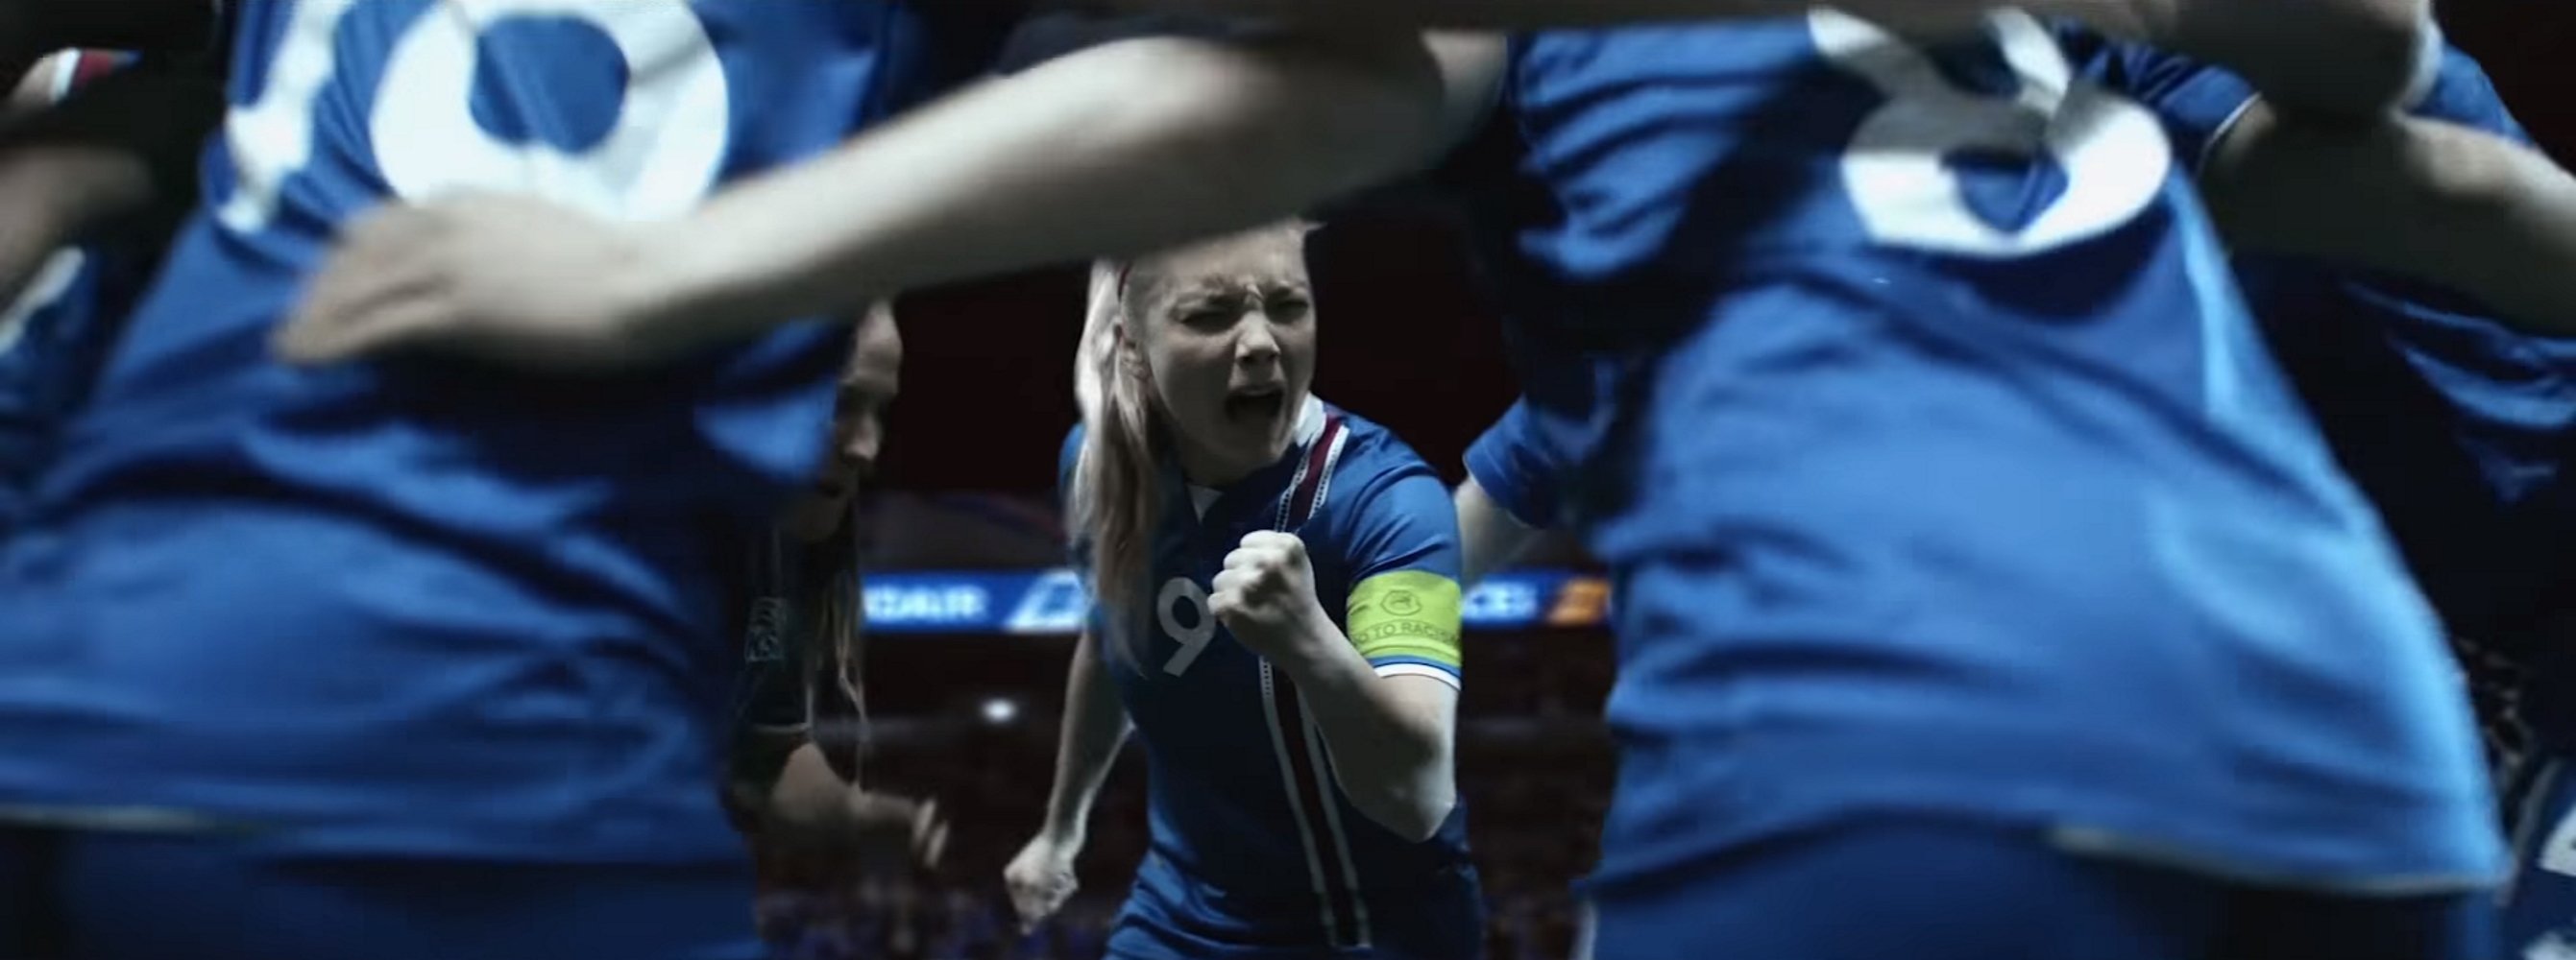 La selección islandesa femenina 'estalla' contra el machismo en el fútbol